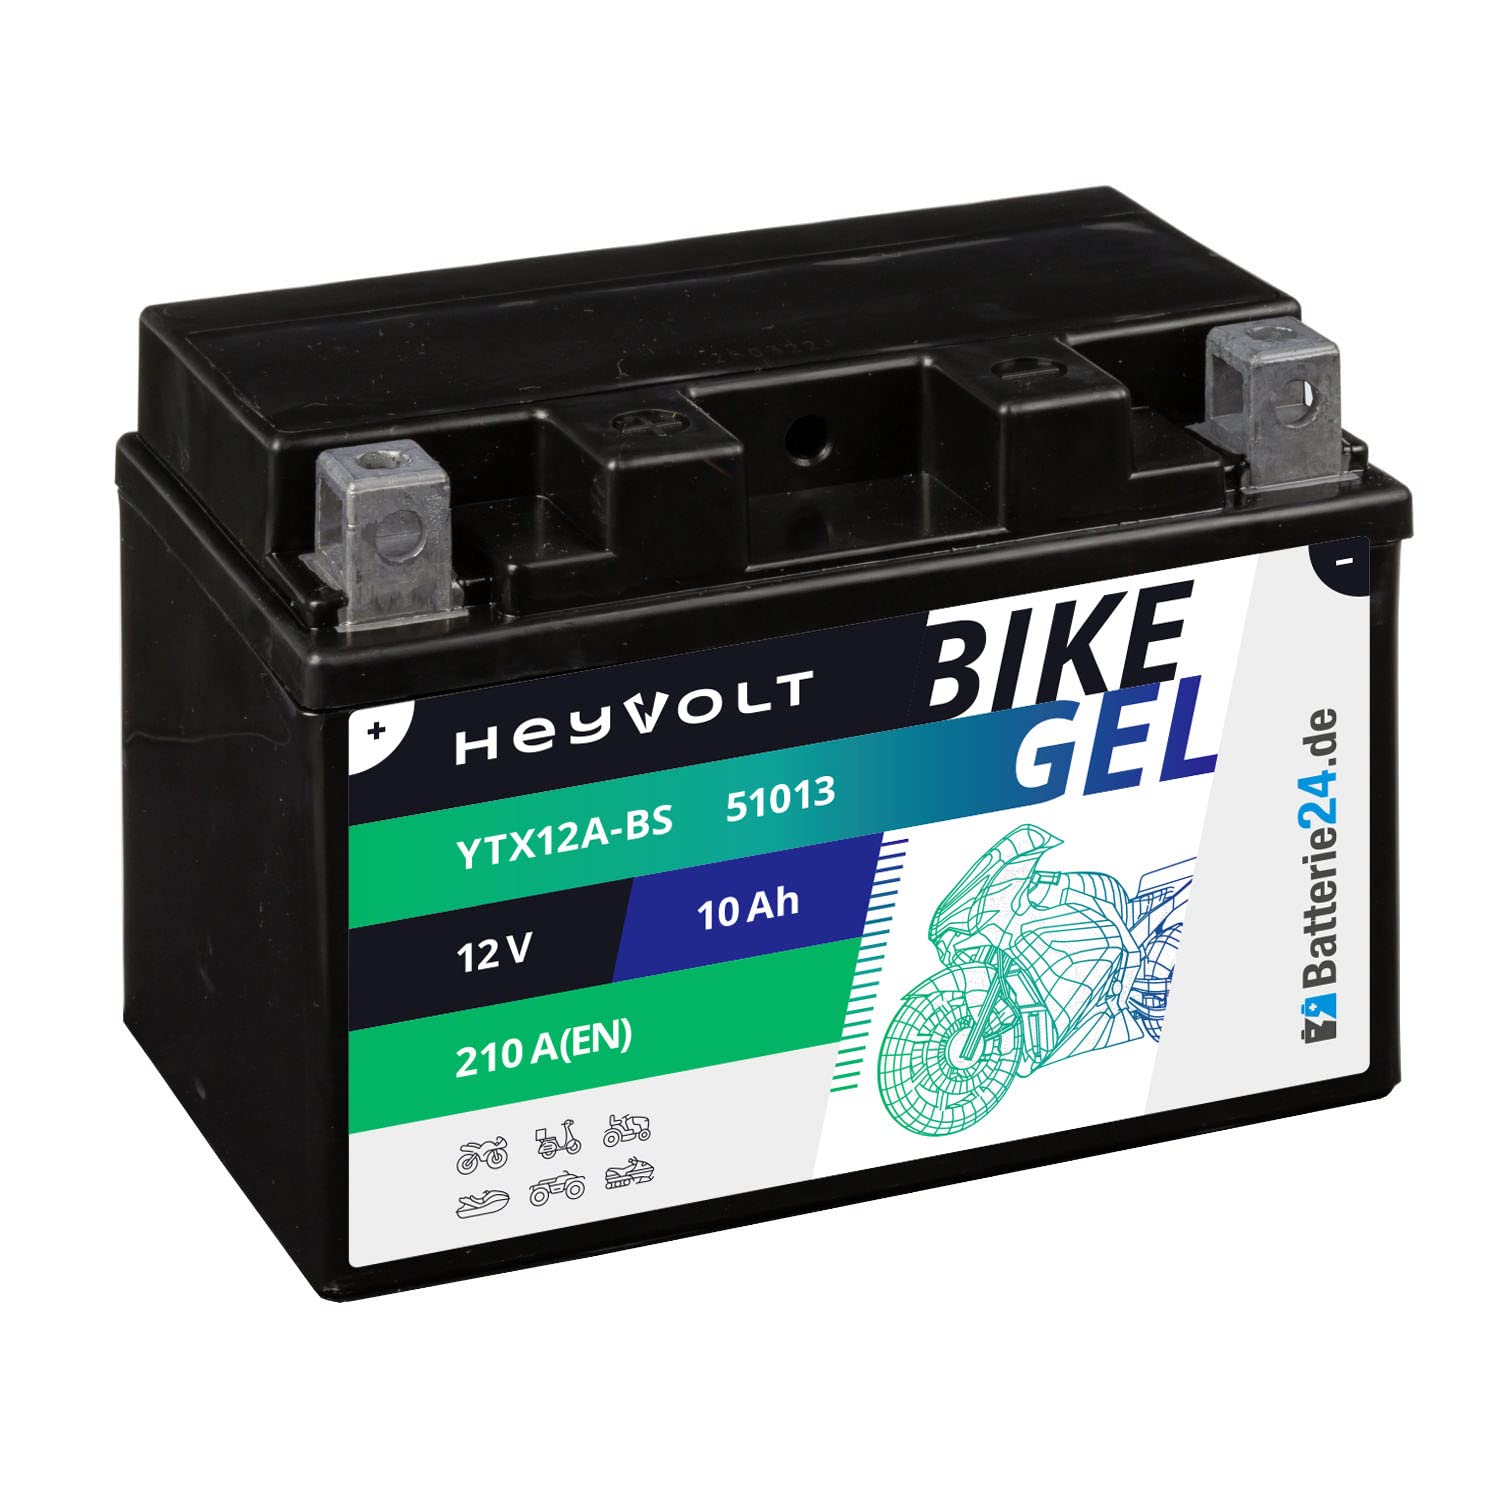 HeyVolt GEL Motorradbatterie 12V 10Ah YTX12A-BS 51013 CTX12A-BS GT12A-BS von Batterie24.de